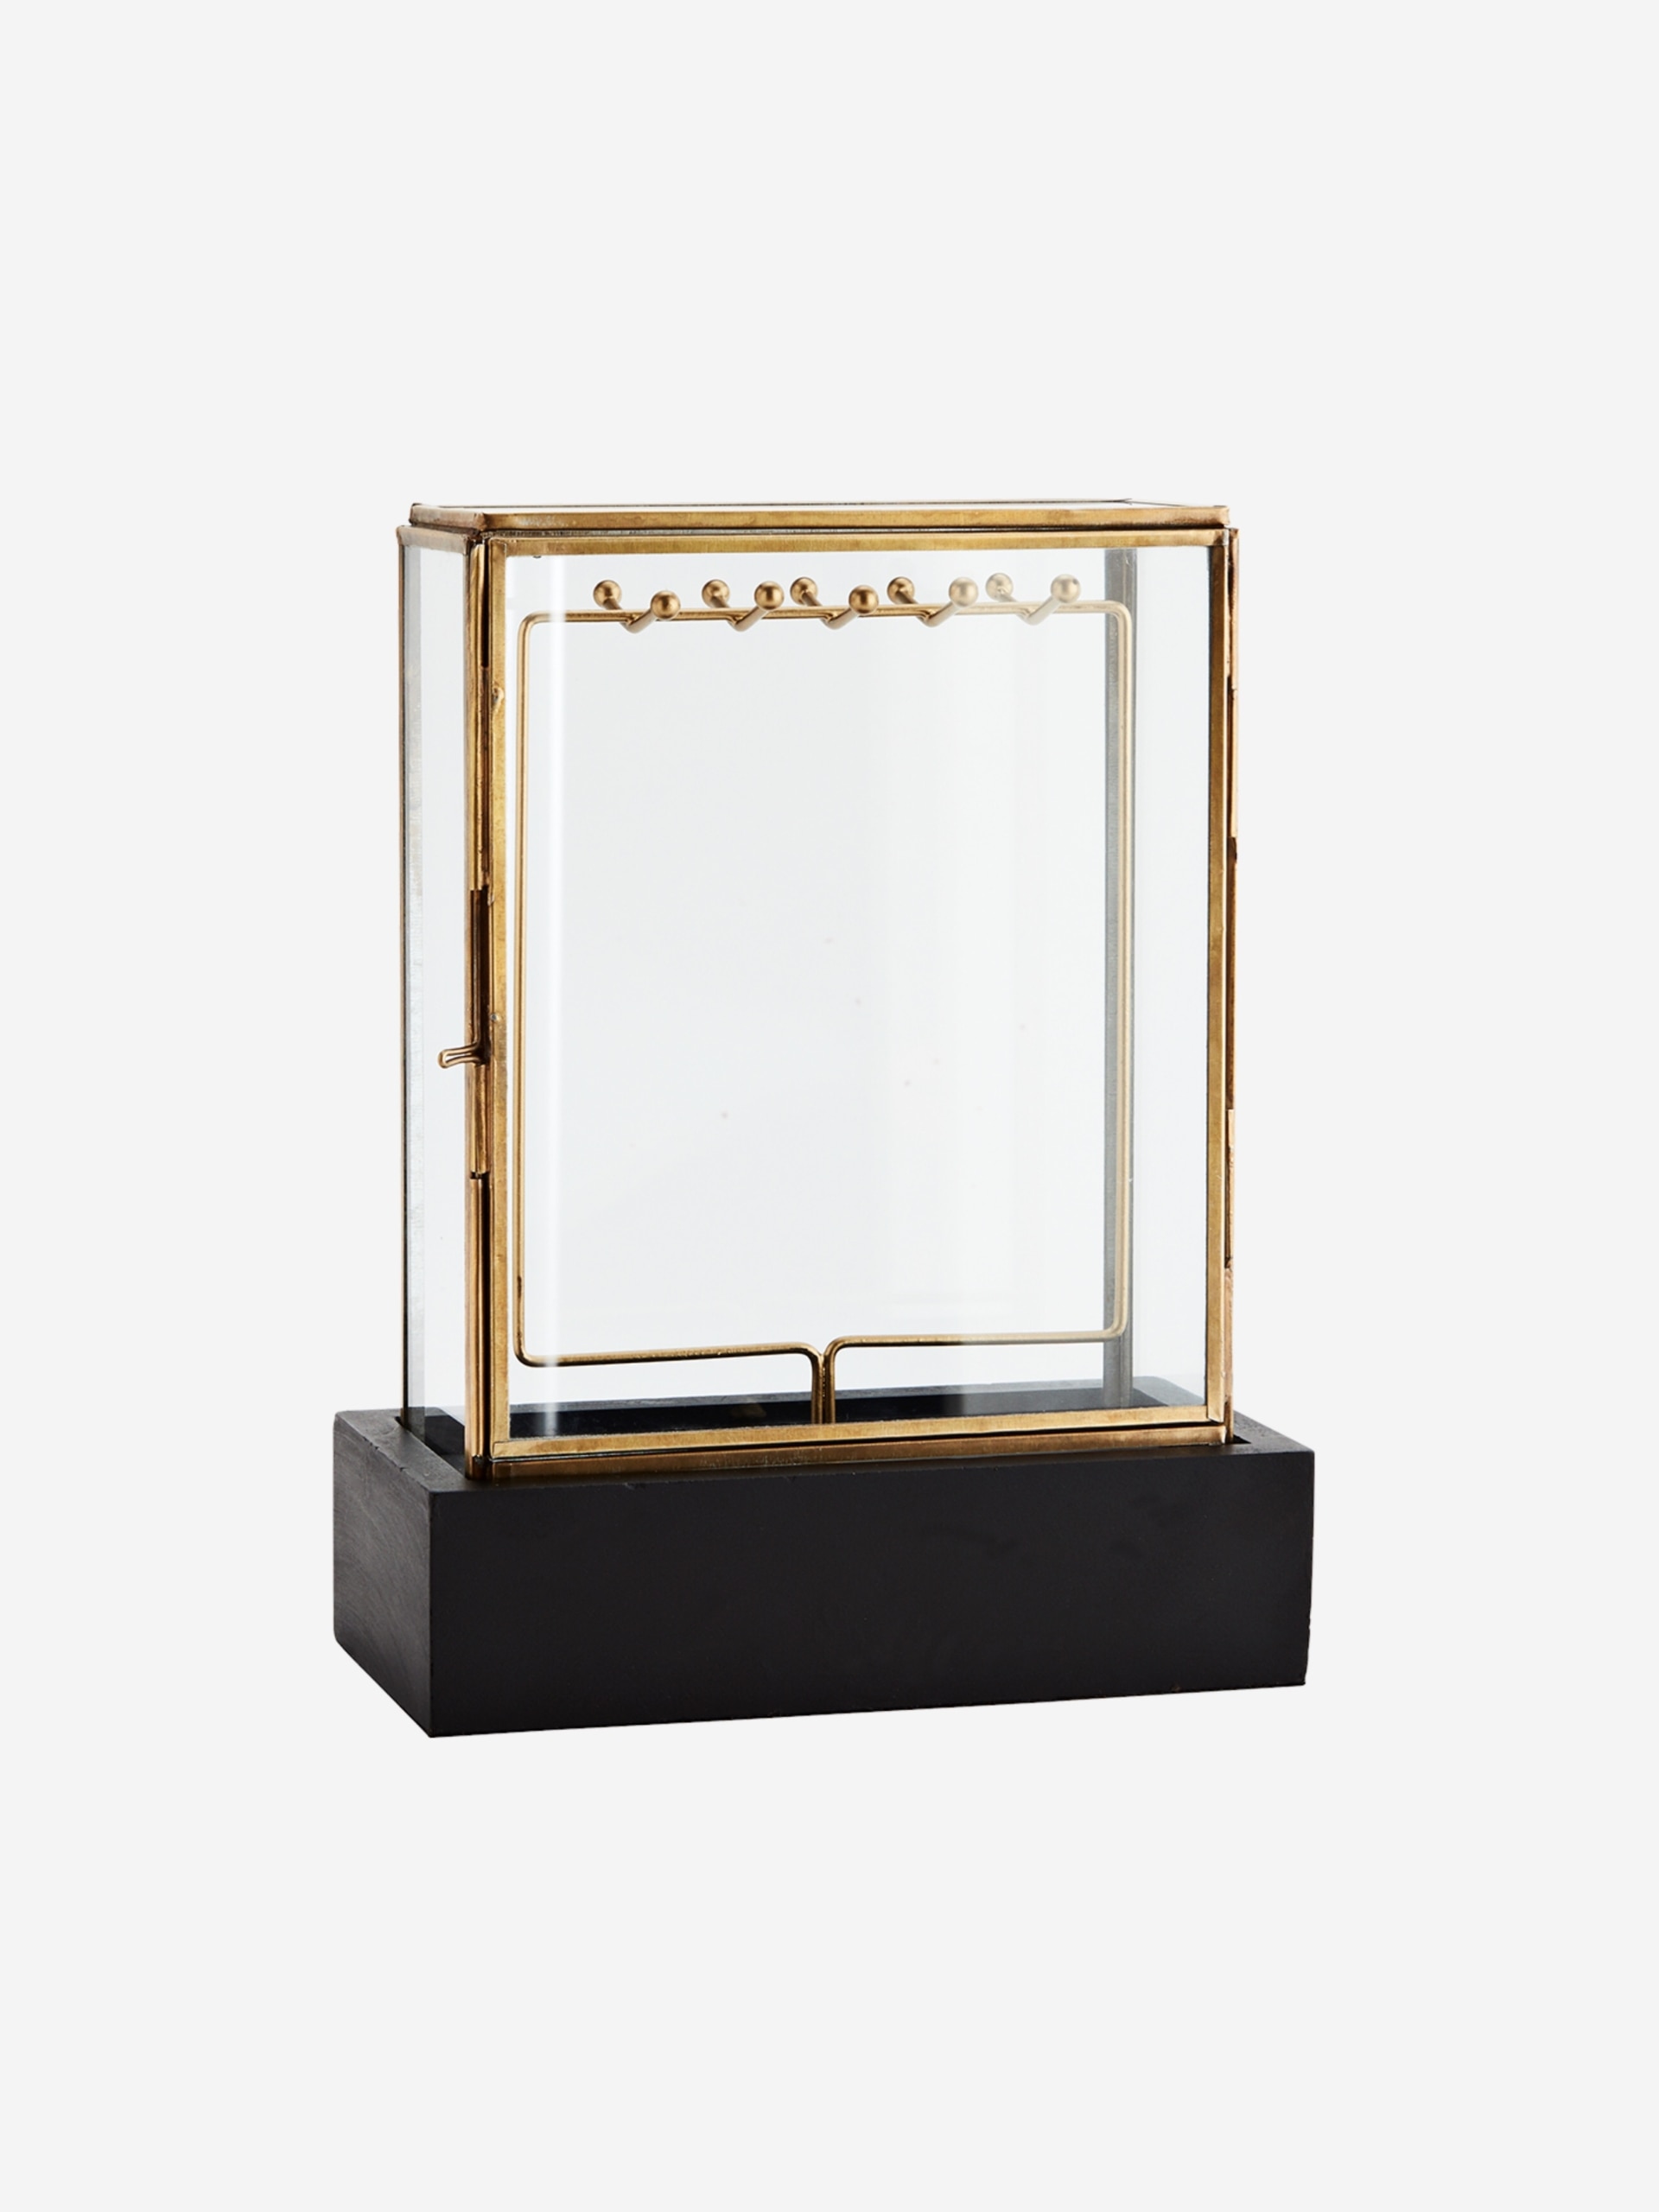 Caja cristal - The Nook Store, caja cristal 